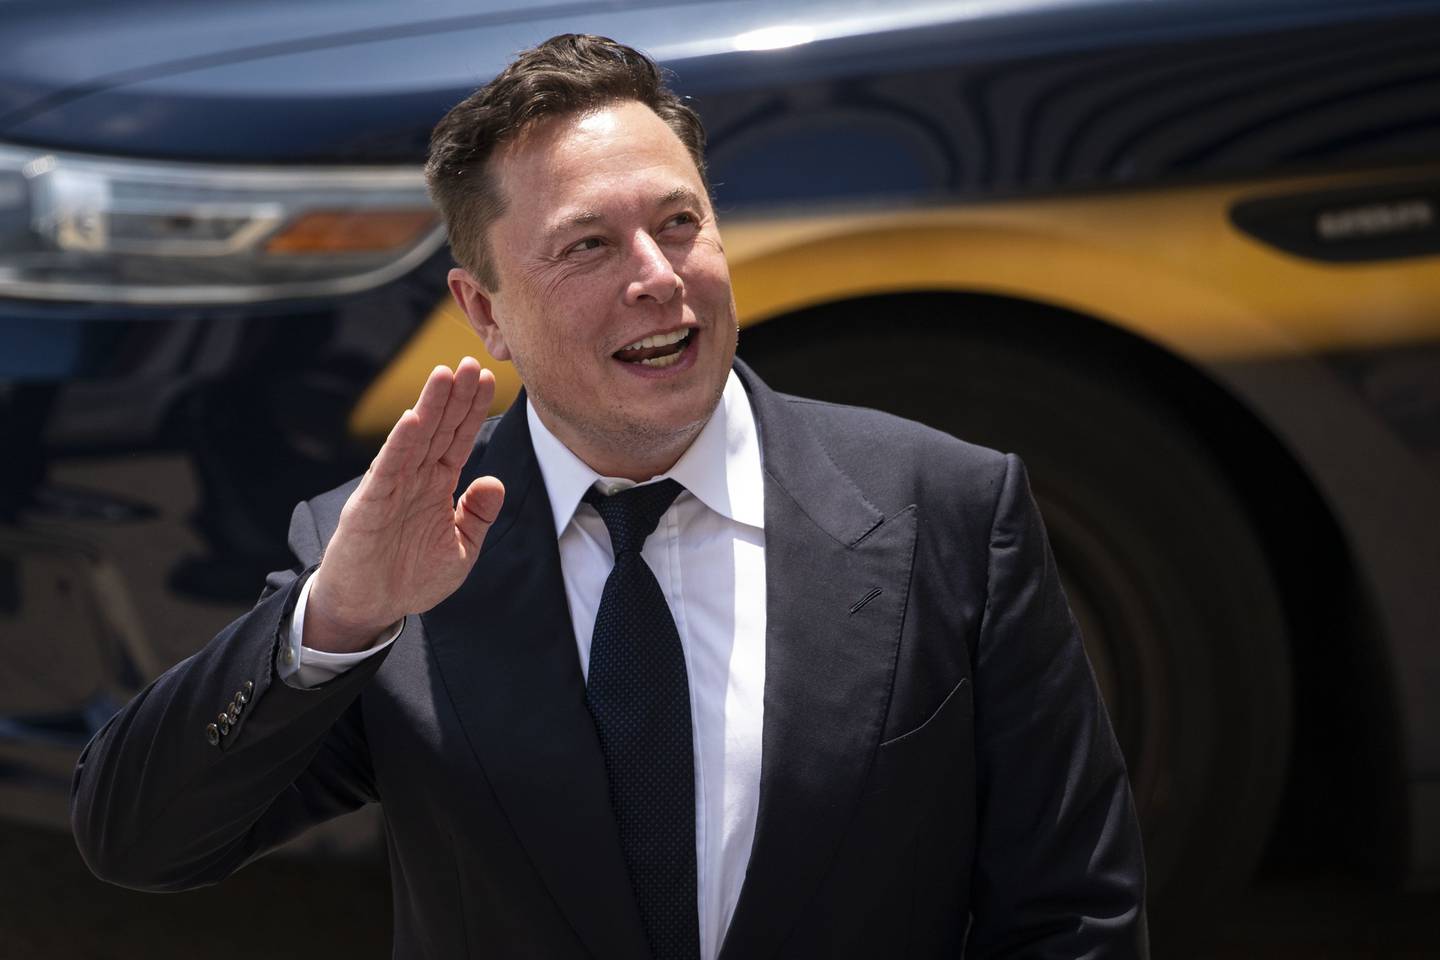 Agência está analisando os tweets de Musk em 6 de novembro nos quais ele prometeu vender 10% de suas ações da Tesla